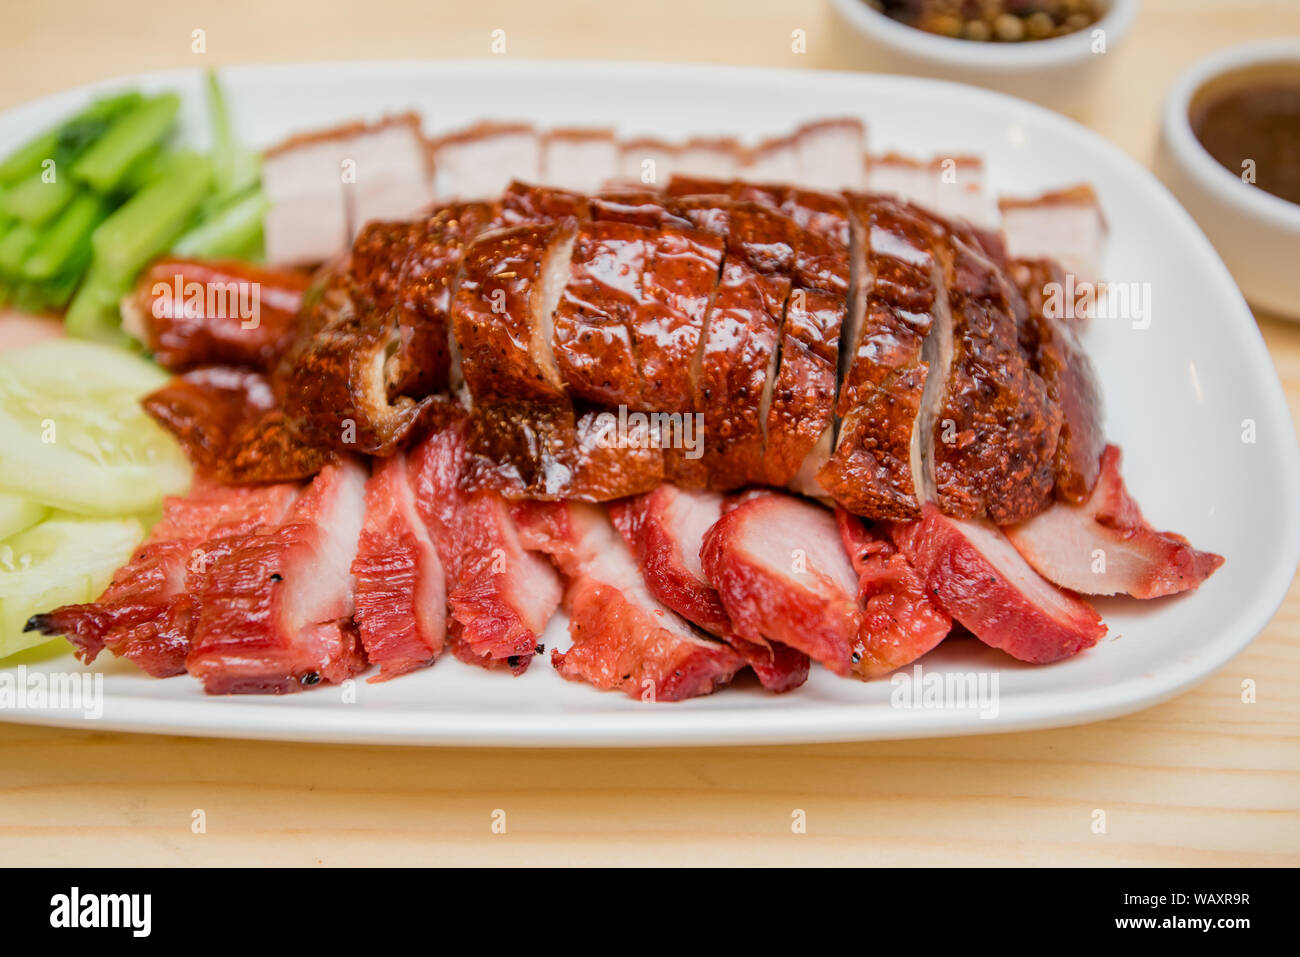 Roast duck and roast pork, Thai food, Chinese food Stock Photo